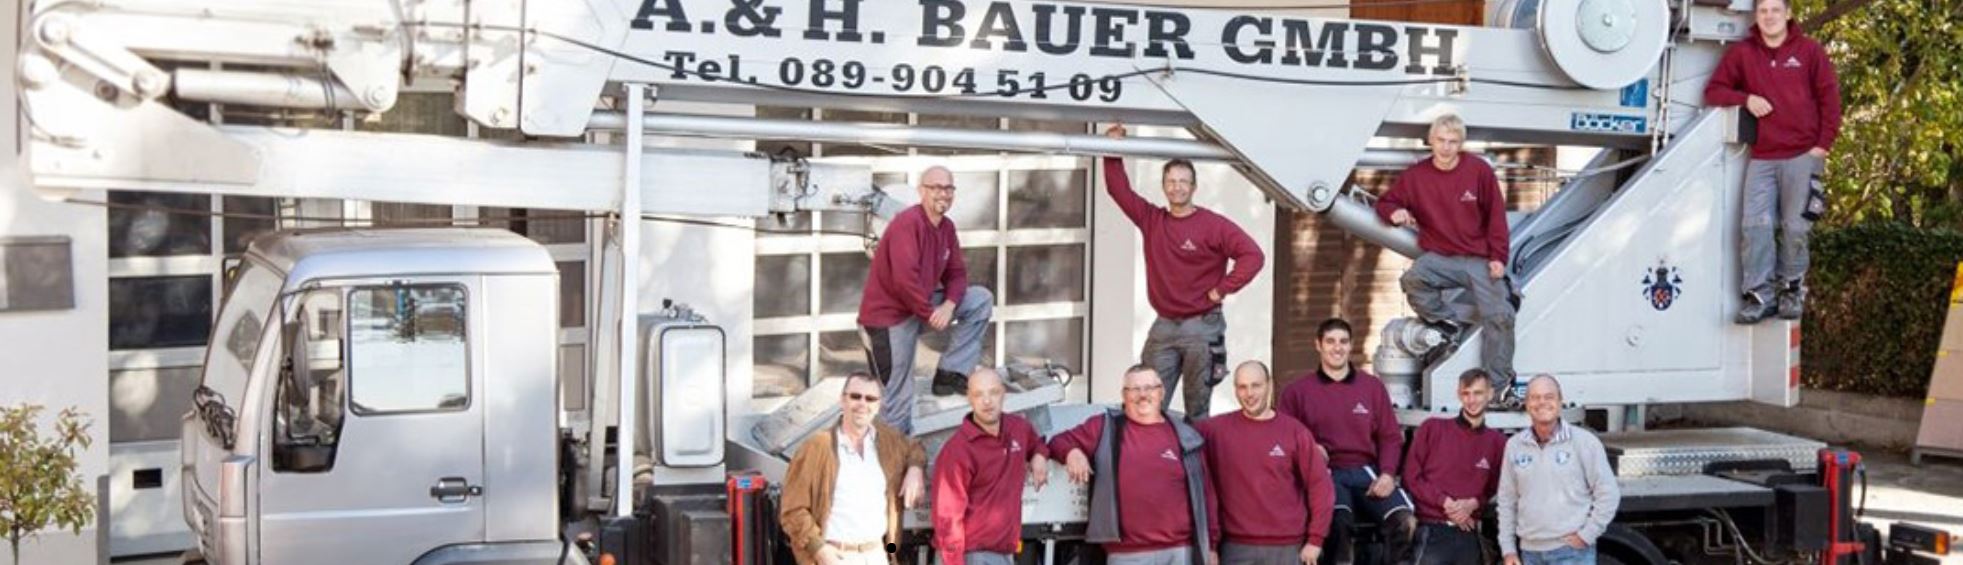 Kundenbild groß 3 Spengler und Dachdecker A. & H. Bauer GmbH München